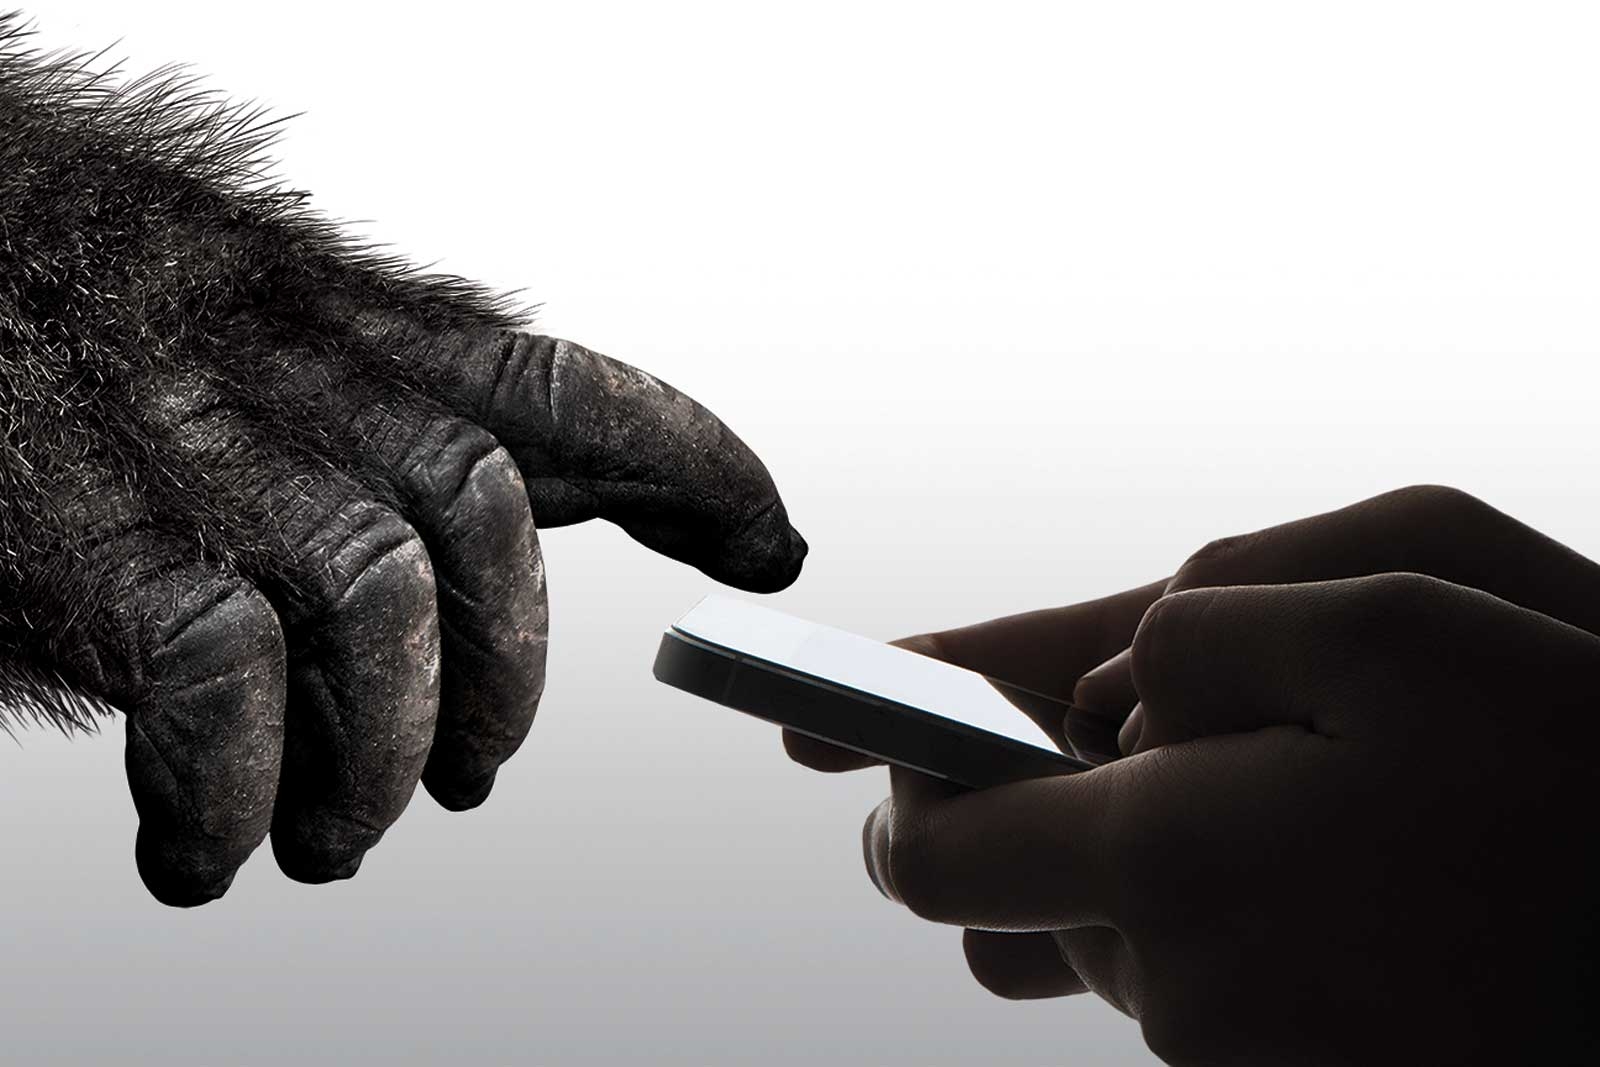 第六代大猩猩玻璃要给手机屏二倍的维护